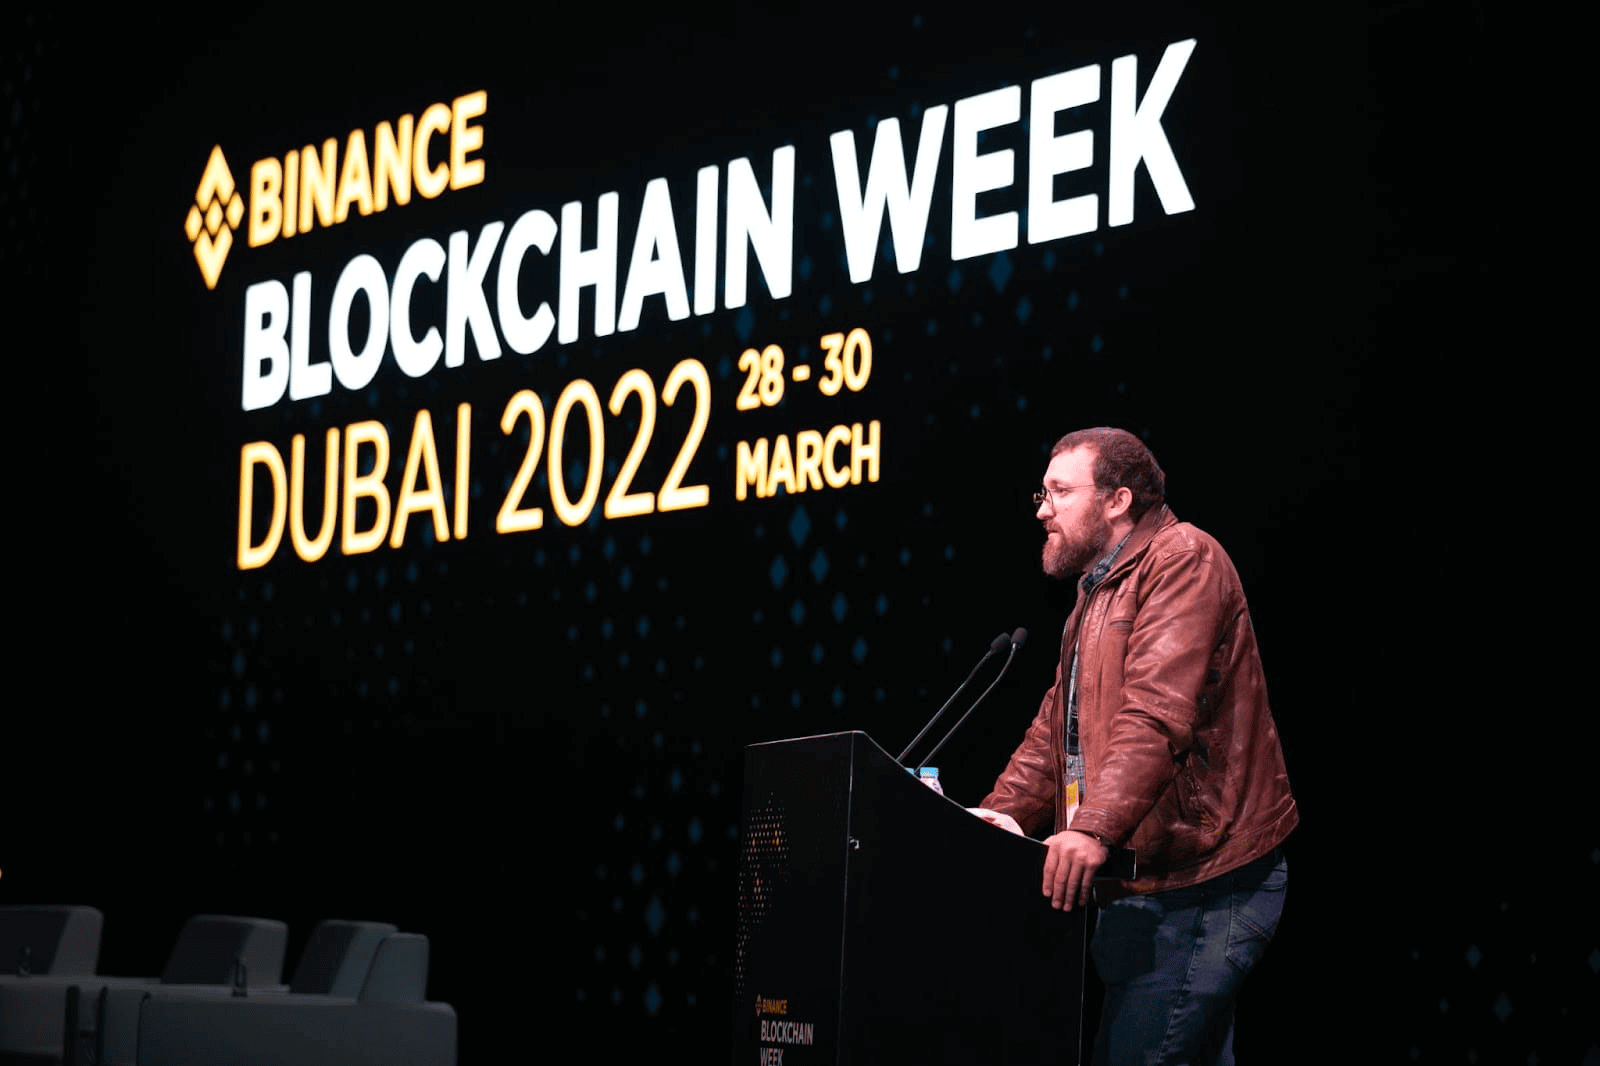 Binance Blockchain Week Dubai 2022